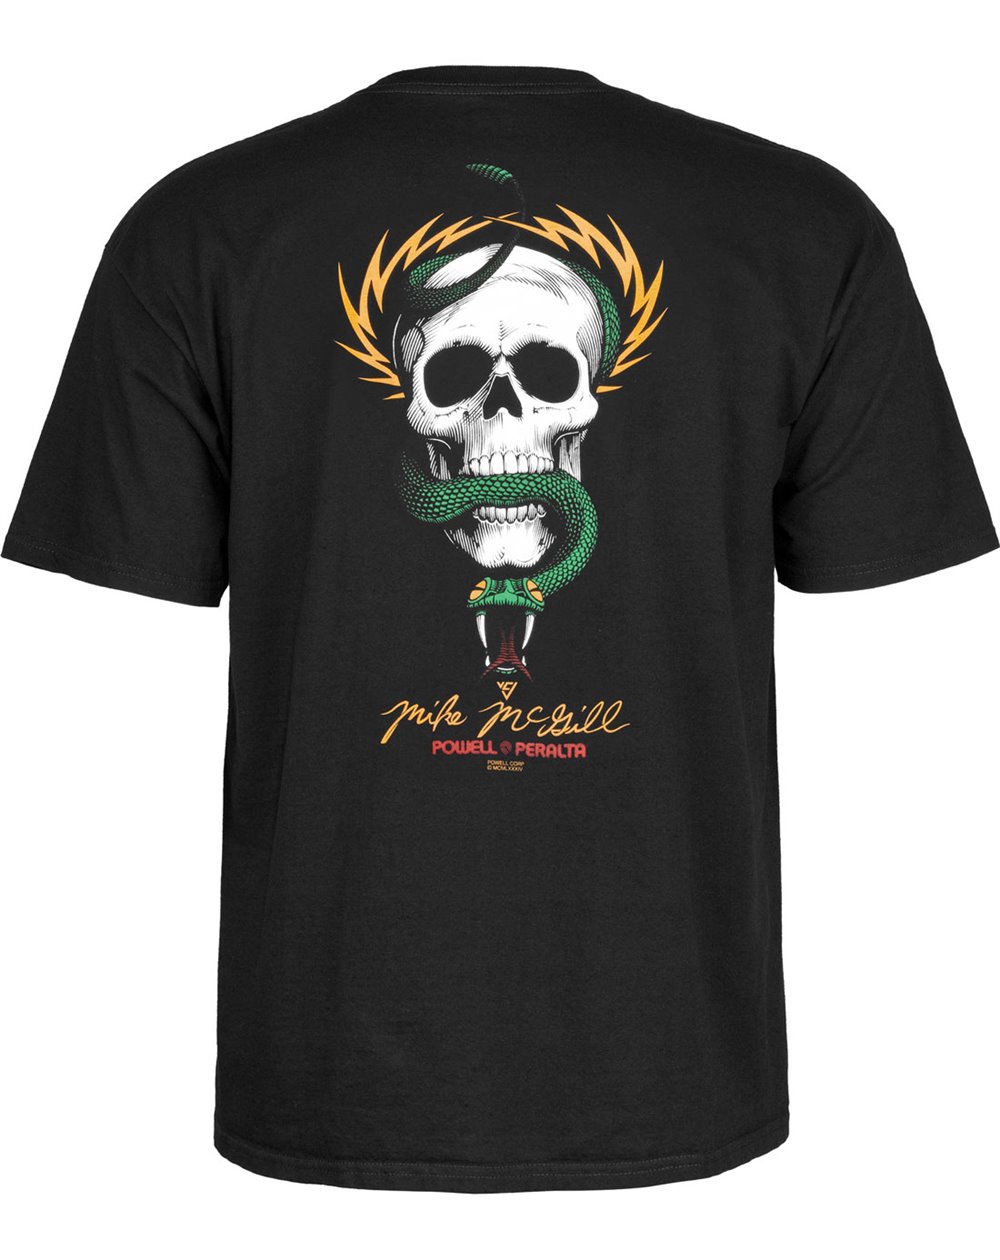 Powell Peralta Herren T-Shirt Mike McGill Skull & Snake Black